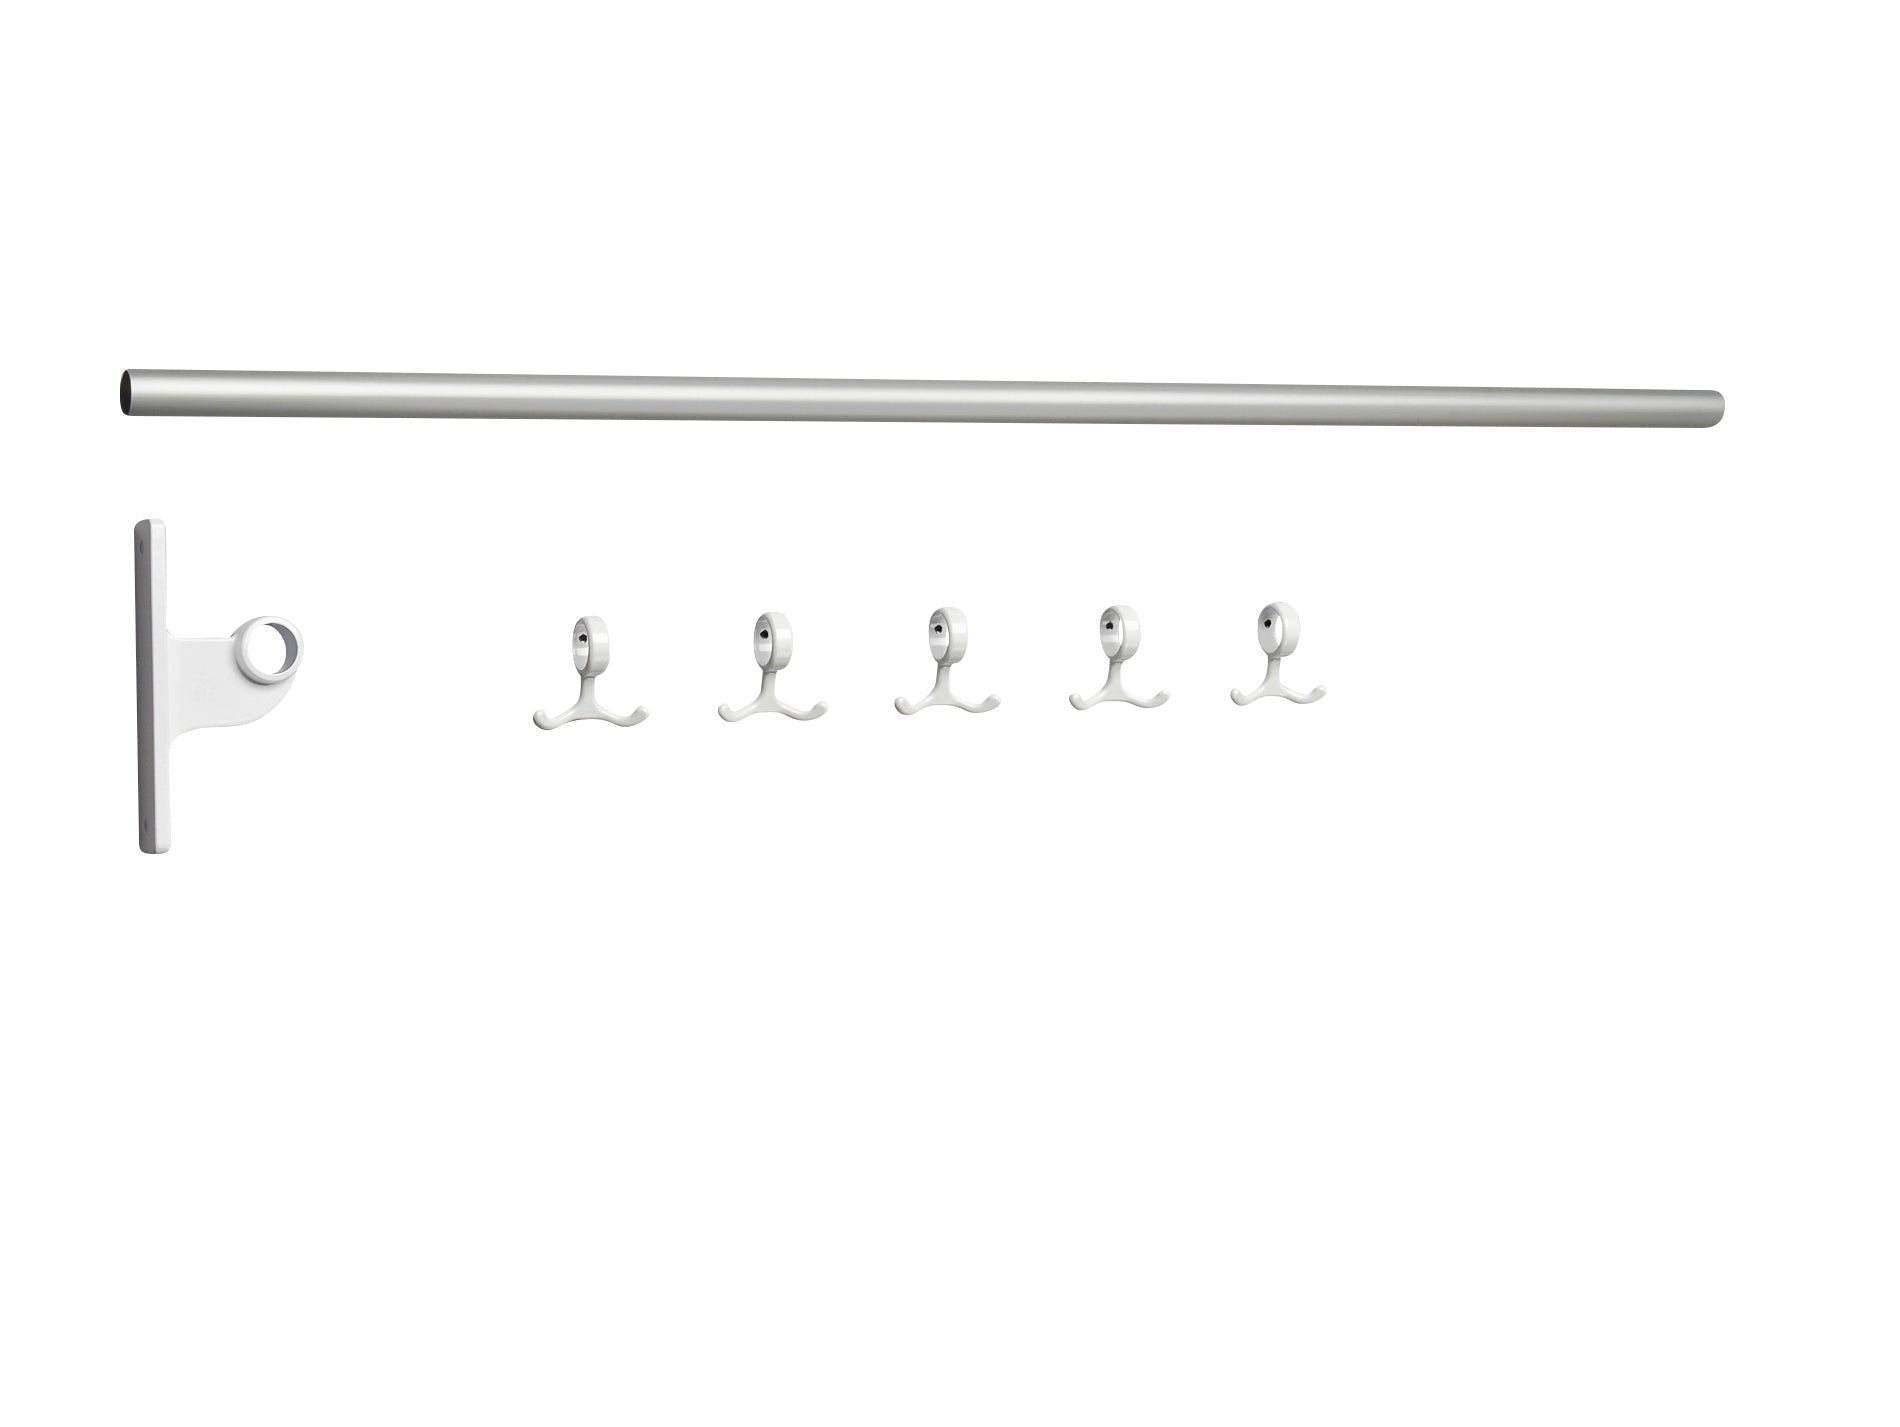 Essem Design Nostalgi Hook Bar -alumiinin laajennusosa, valkoinen